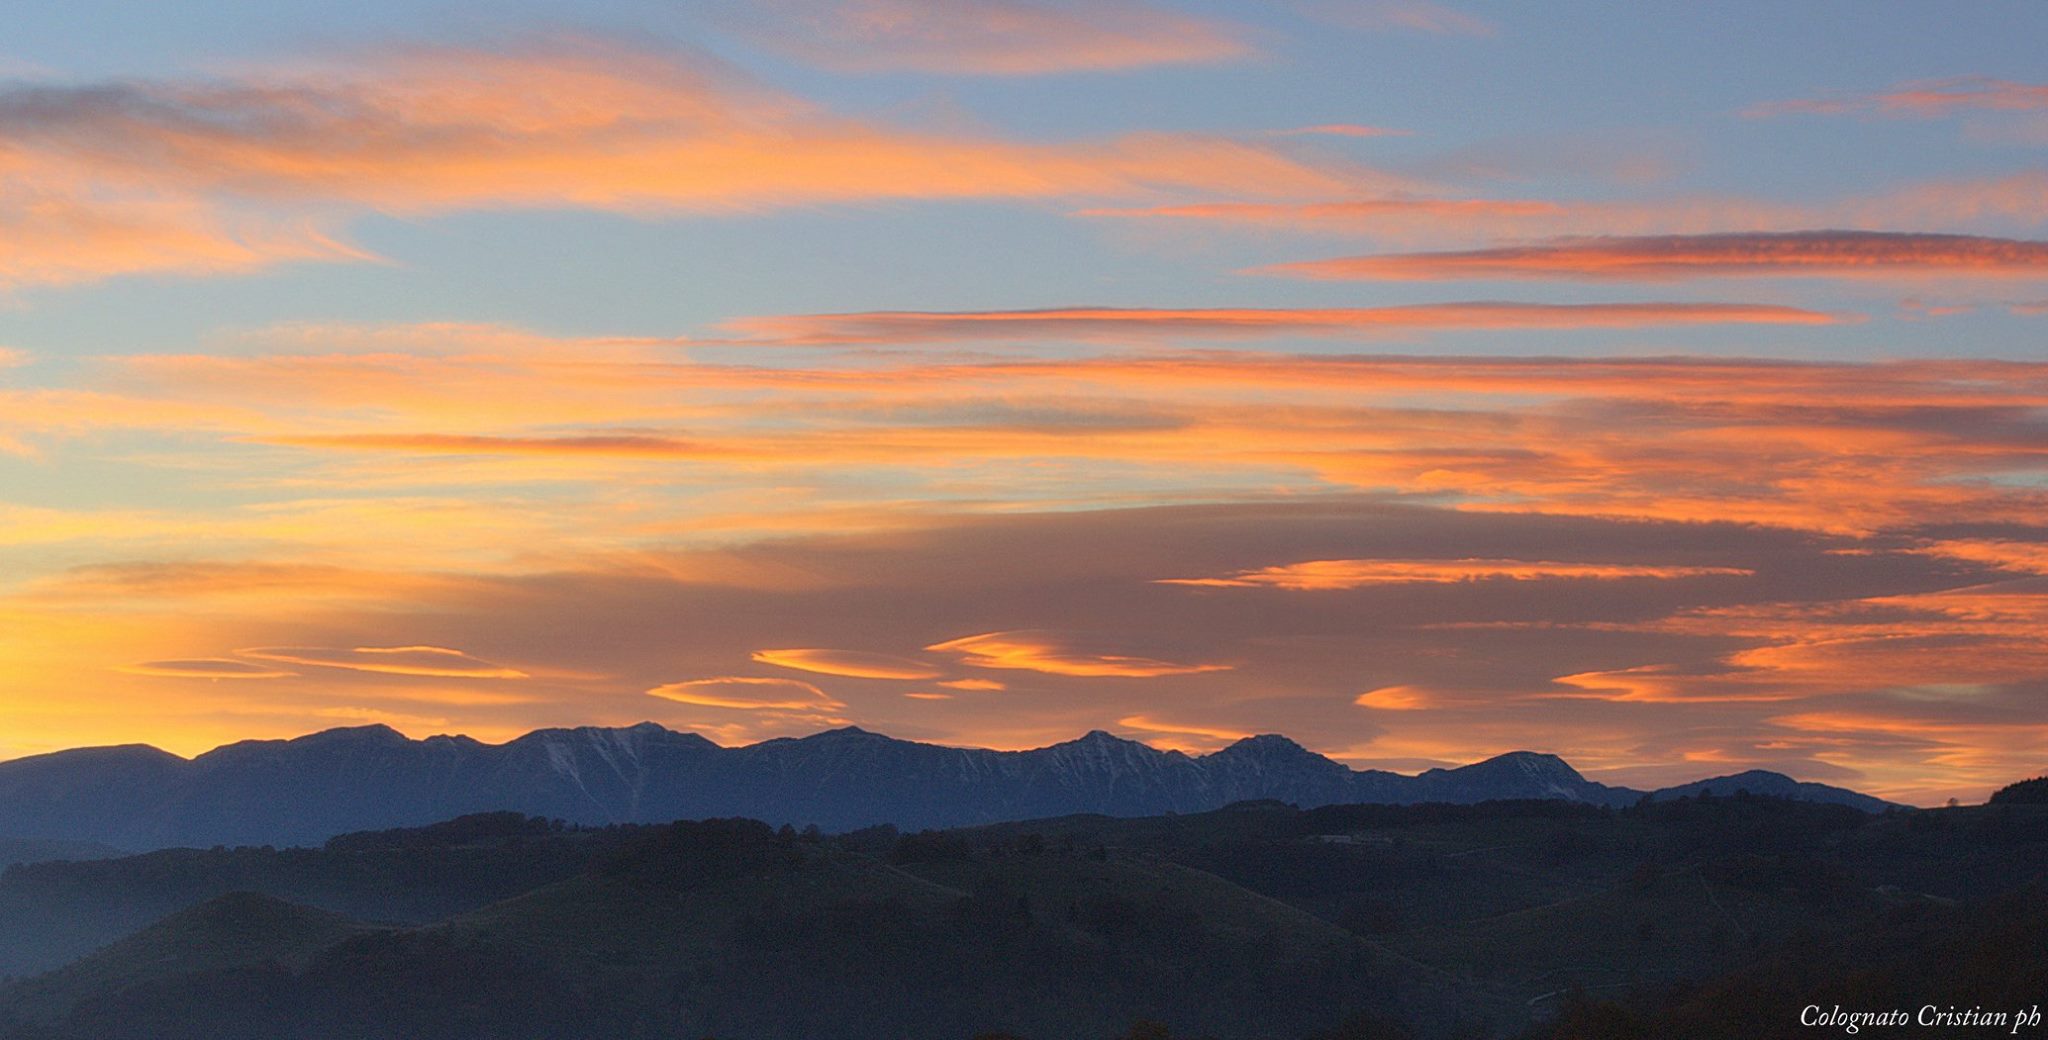 Ottobre 2015 - Per il mese di ottobre vi proponiamo uno scatto in cui vediamo nubi lenticolari e cirrostrati sul Monte Baldo al tramonto (foto Colognato). Le nubi lenticolari, dette anche lee-clouds, si formano tipicamente sottovento alle Alpi con correnti settentrionali o nord-occidentali in alta quota.